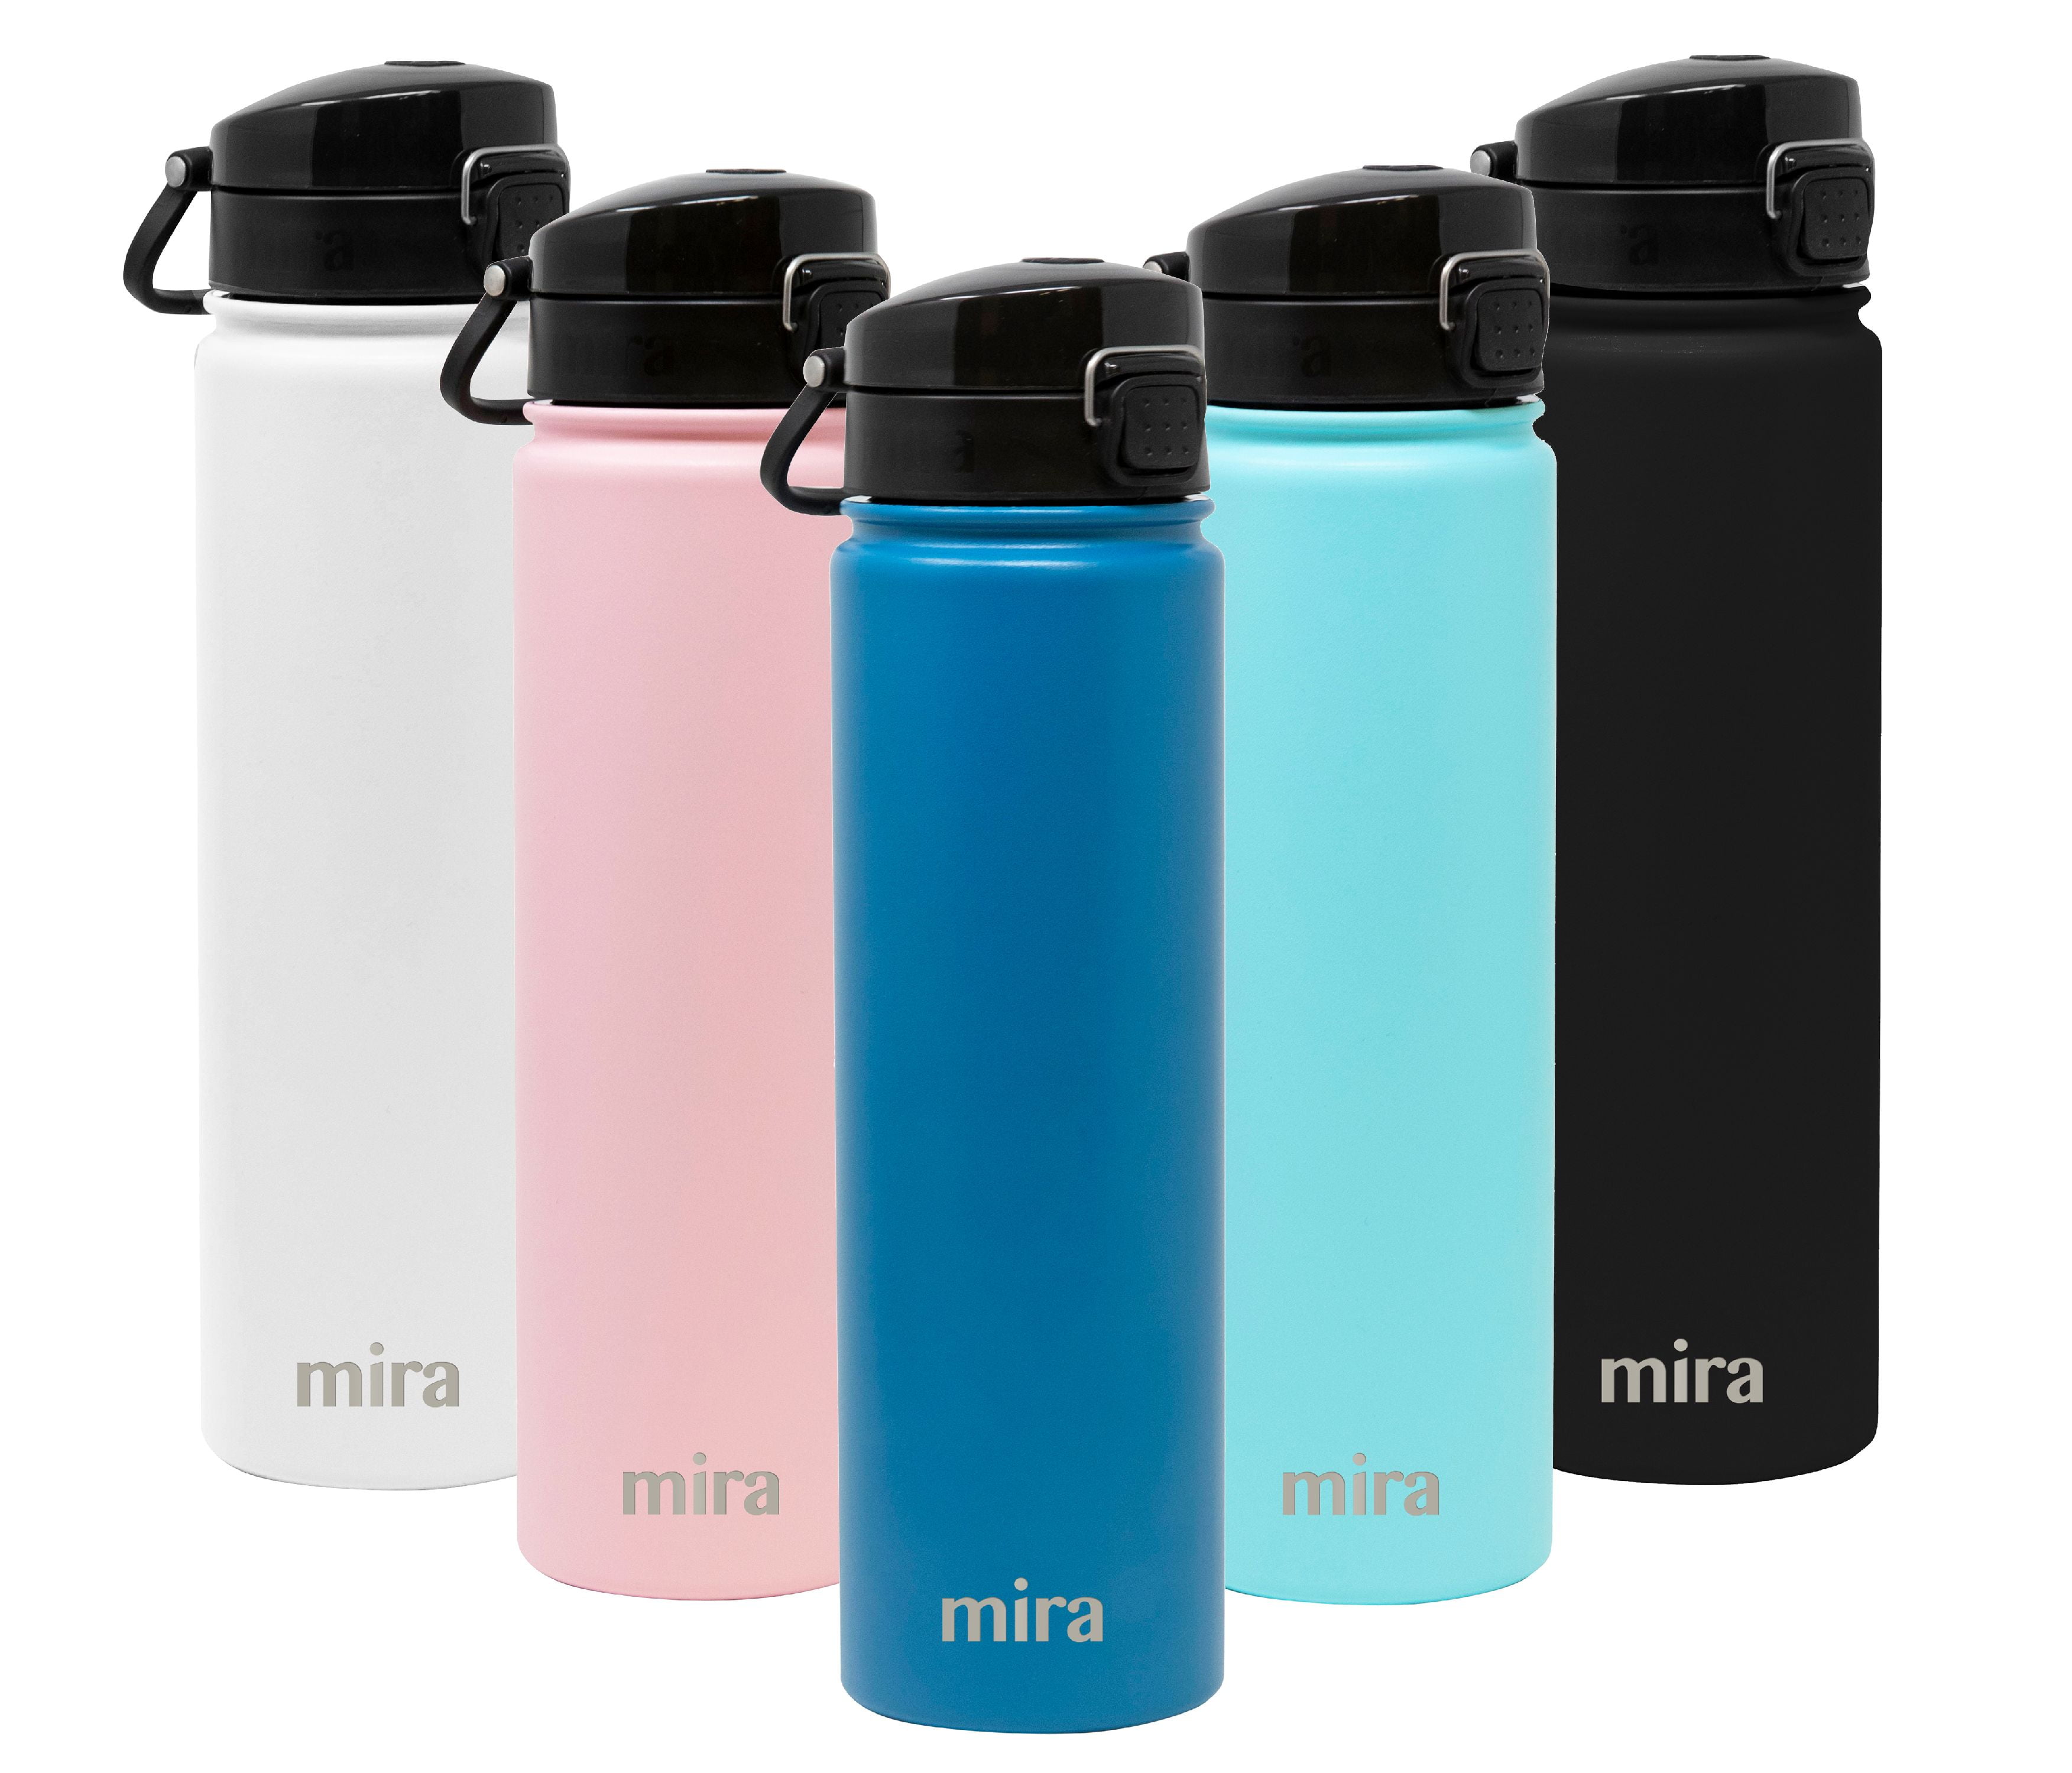 24 oz Sierra One Touch – MIRA Brands